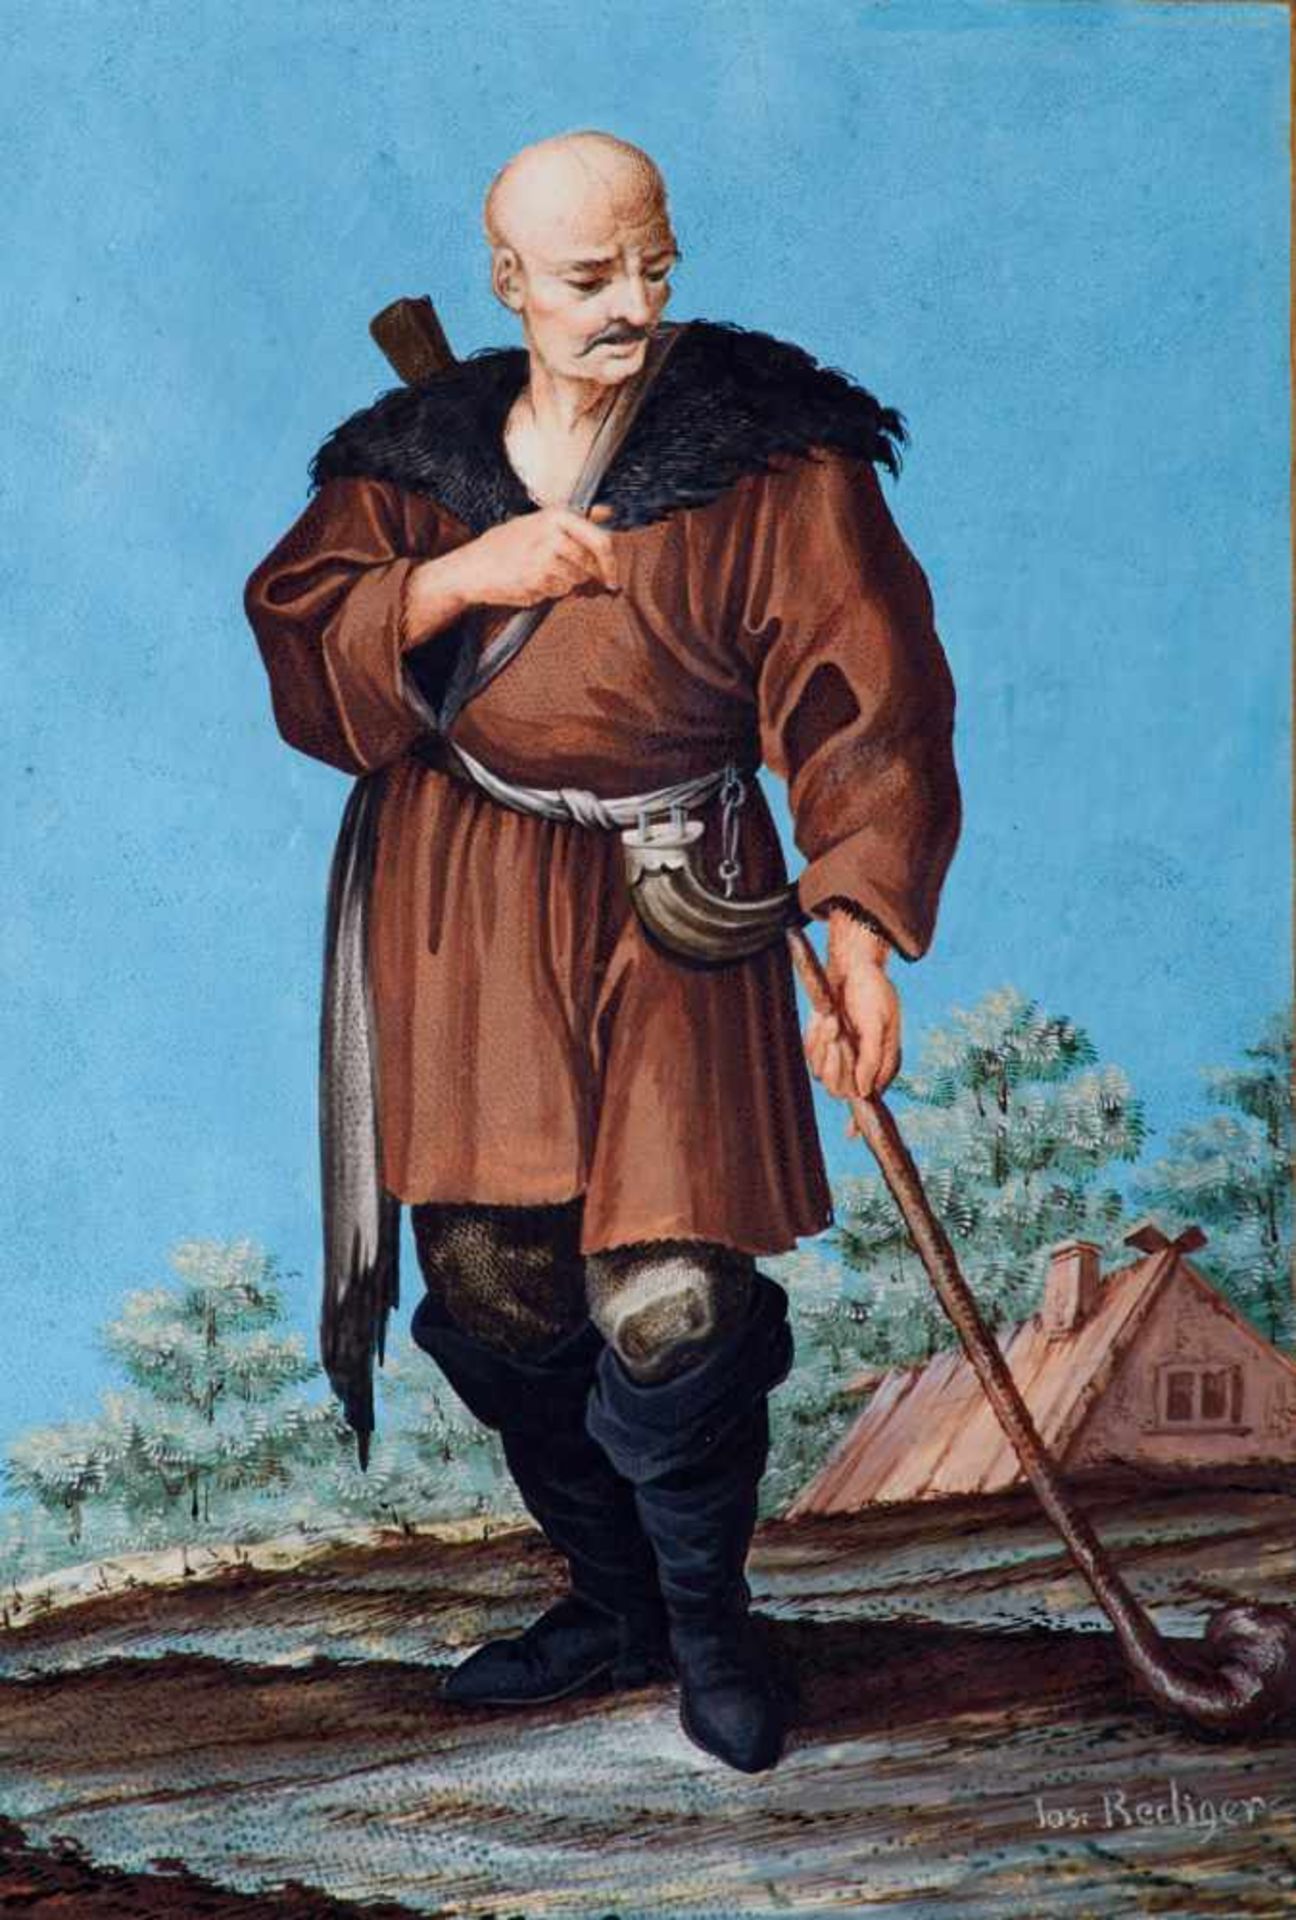 Rediger, Josef (tätig in Eger in der 2. Hälfte des 18.Jahrhunderts), Kalmücke mit Stab und